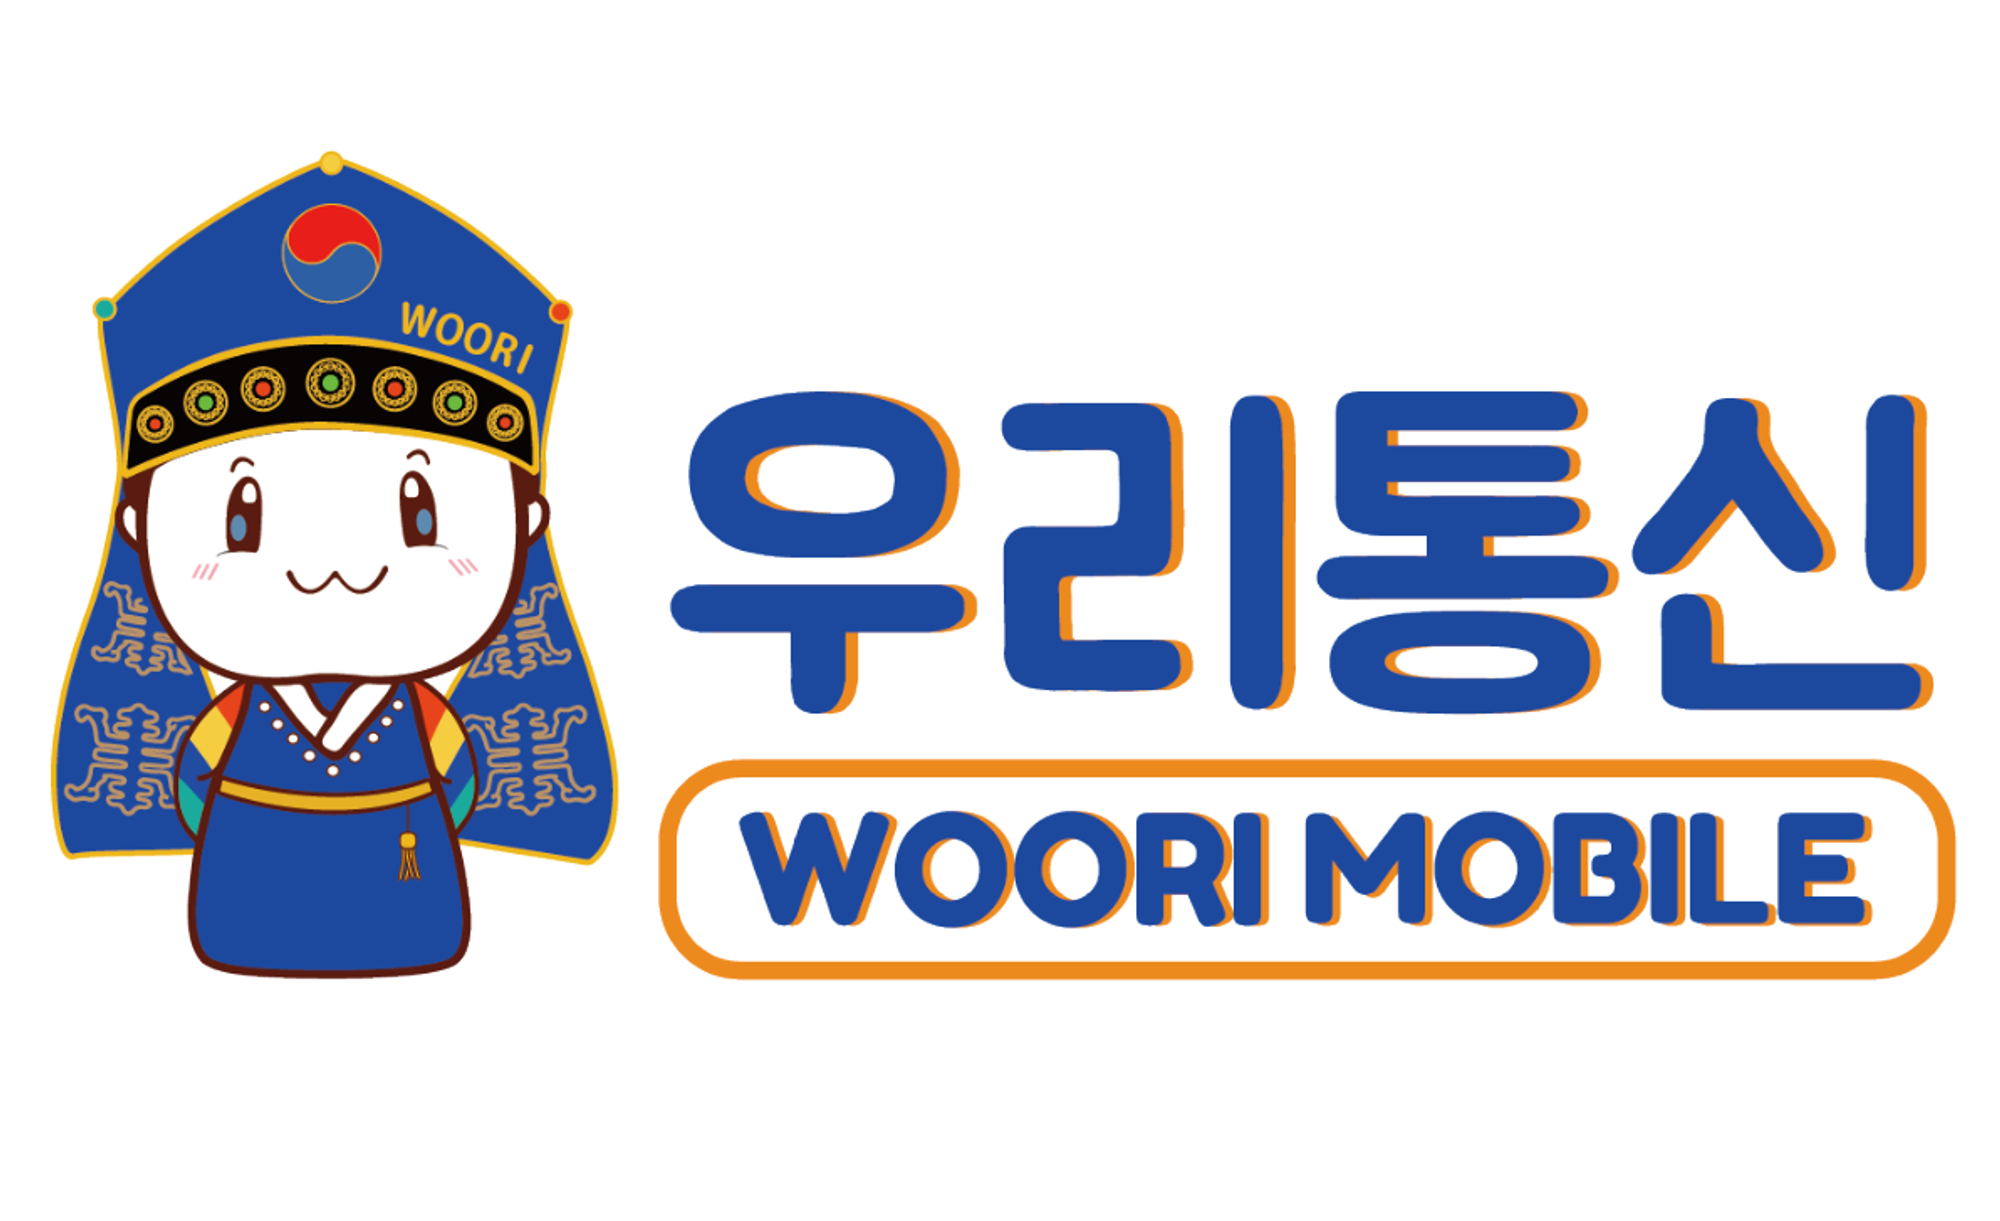 WOORI MOBILE SERVICE IN KOREA | SIM card service